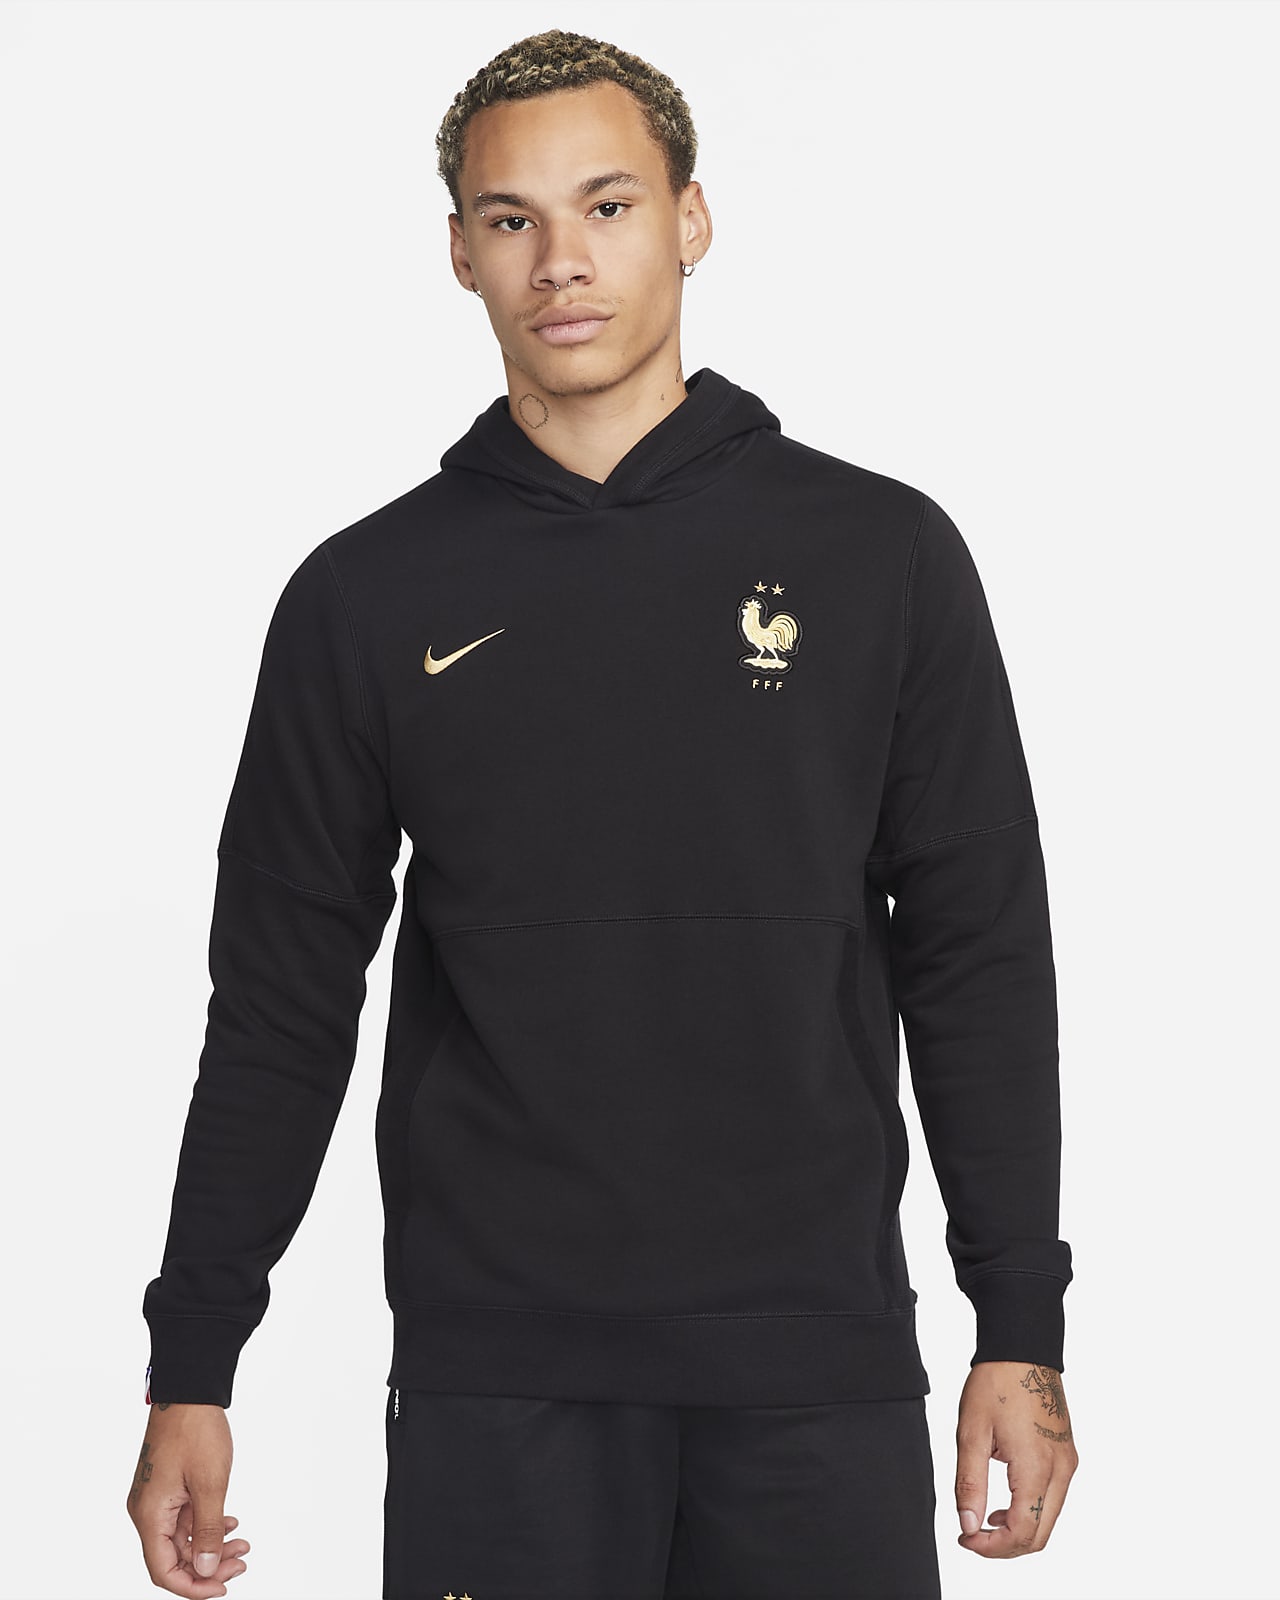 FFF Sudadera con capucha de tejido French terry Hombre. Nike ES